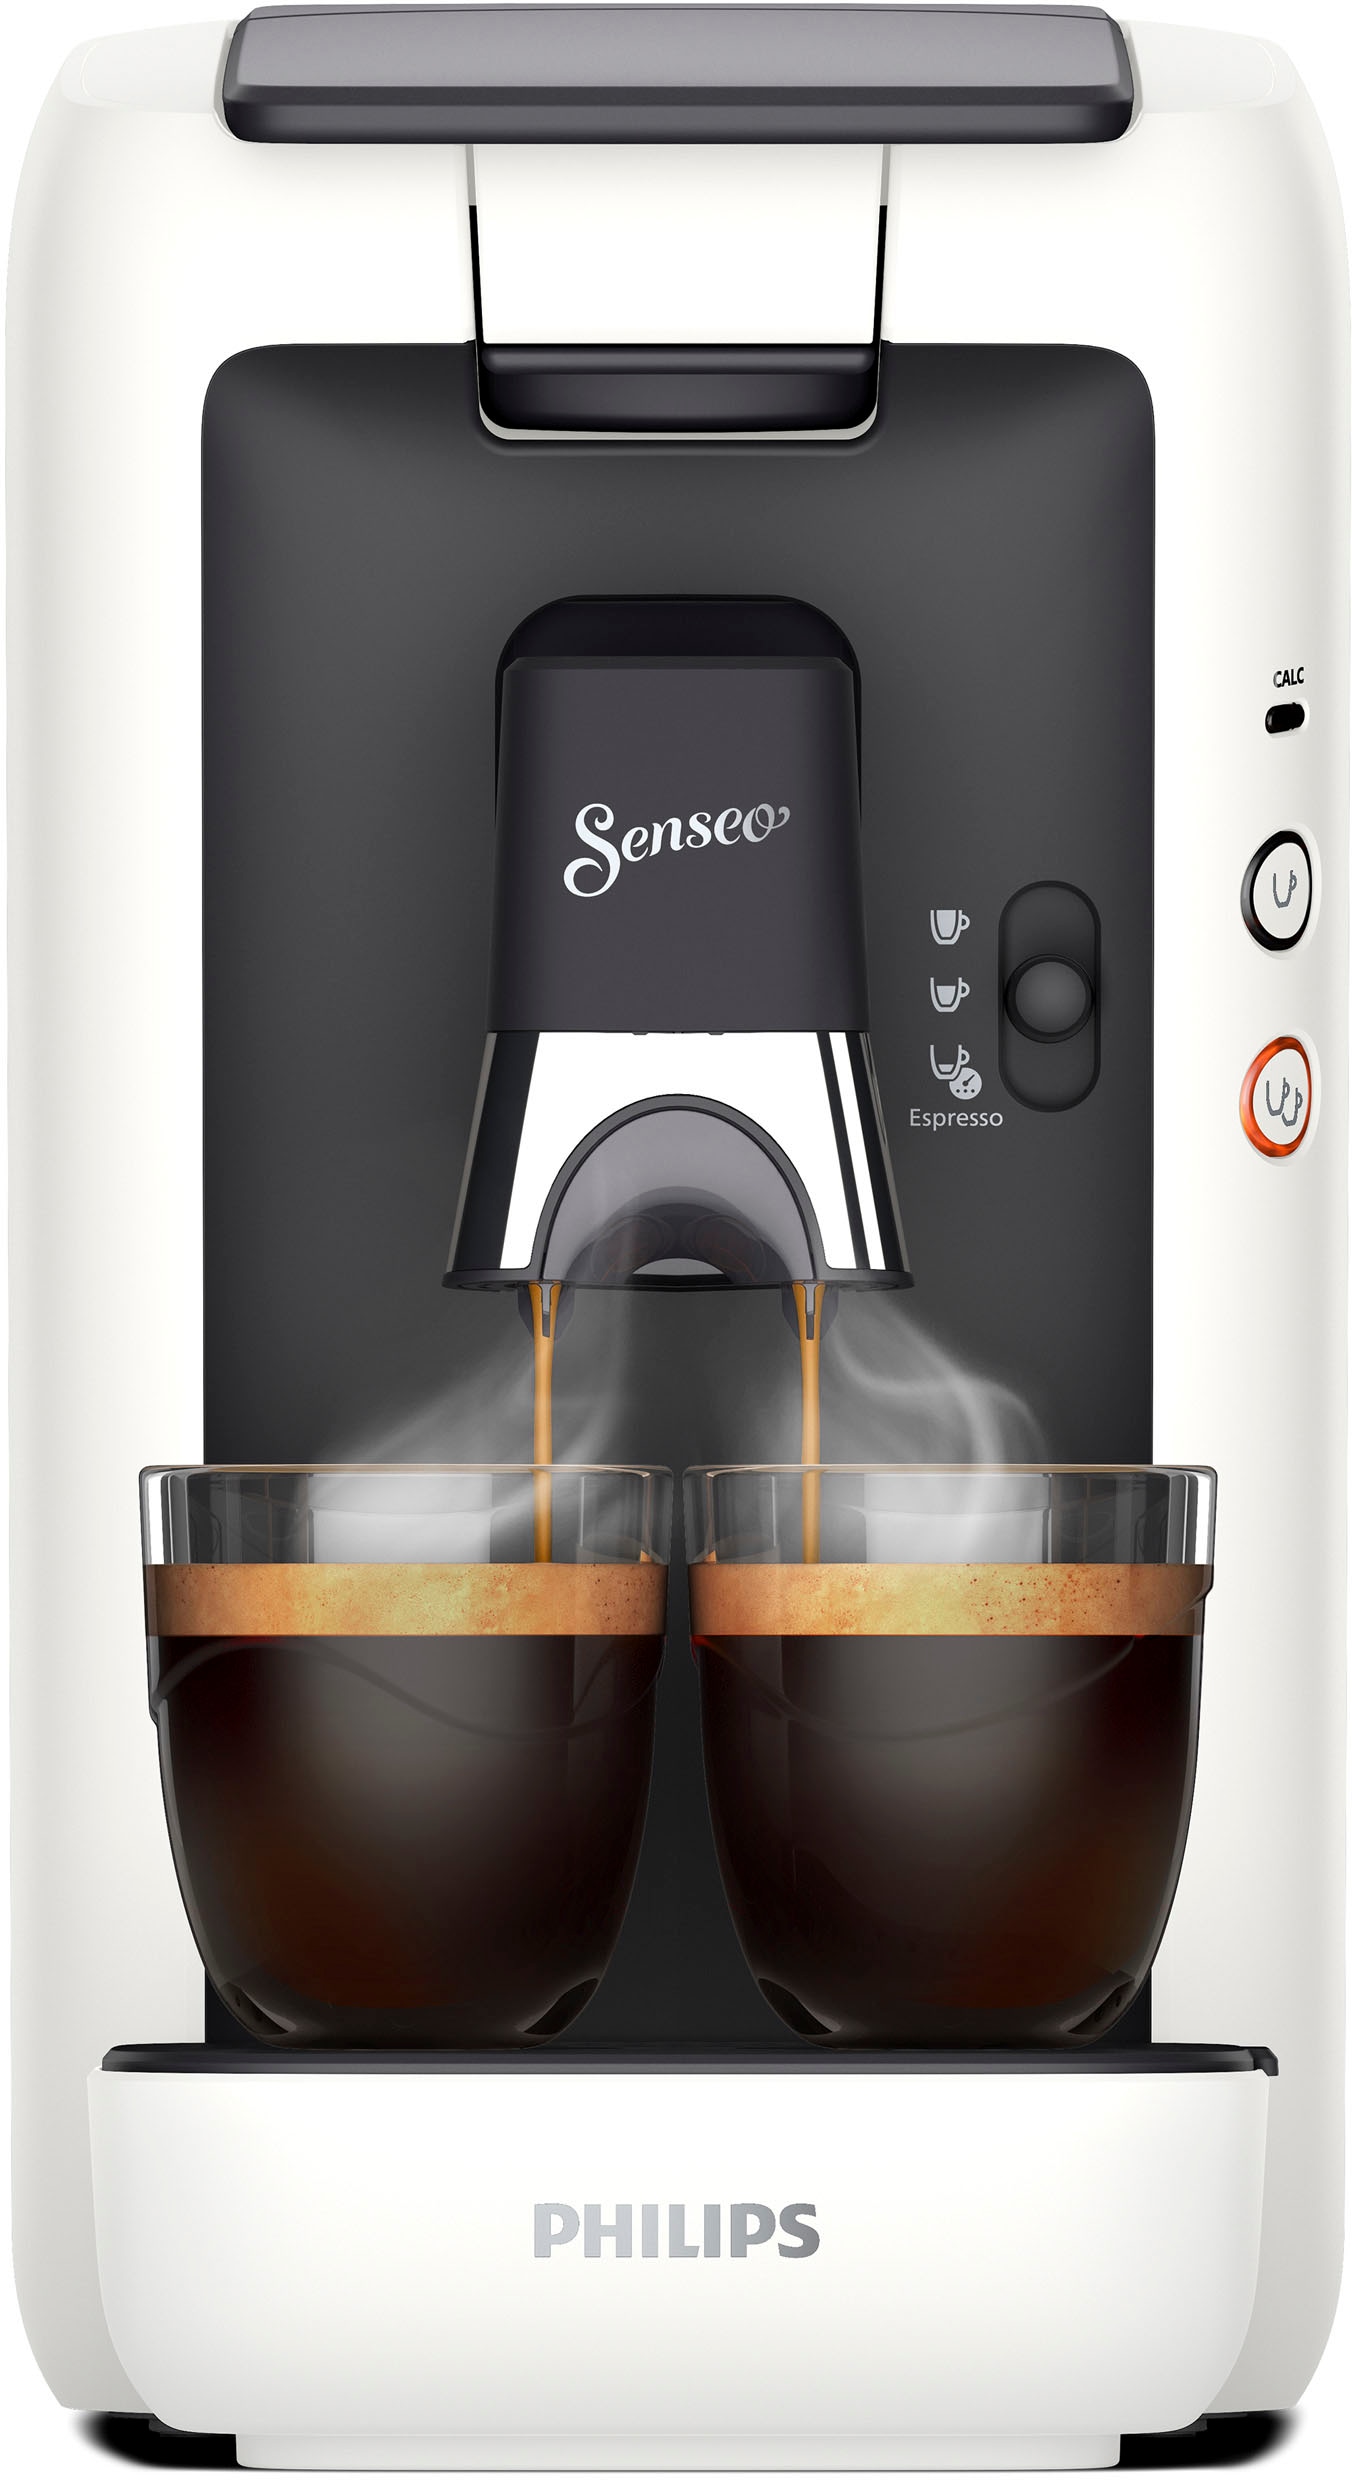 Philips Senseo Kaffeepadmaschine »Maestro Wert 14,- inkl. CSA260/10, UVP 80% im von Kaffeespezialitäten«, | aus Gratis-Zugaben BAUR recyceltem +3 € Memo-Funktion, Plastik